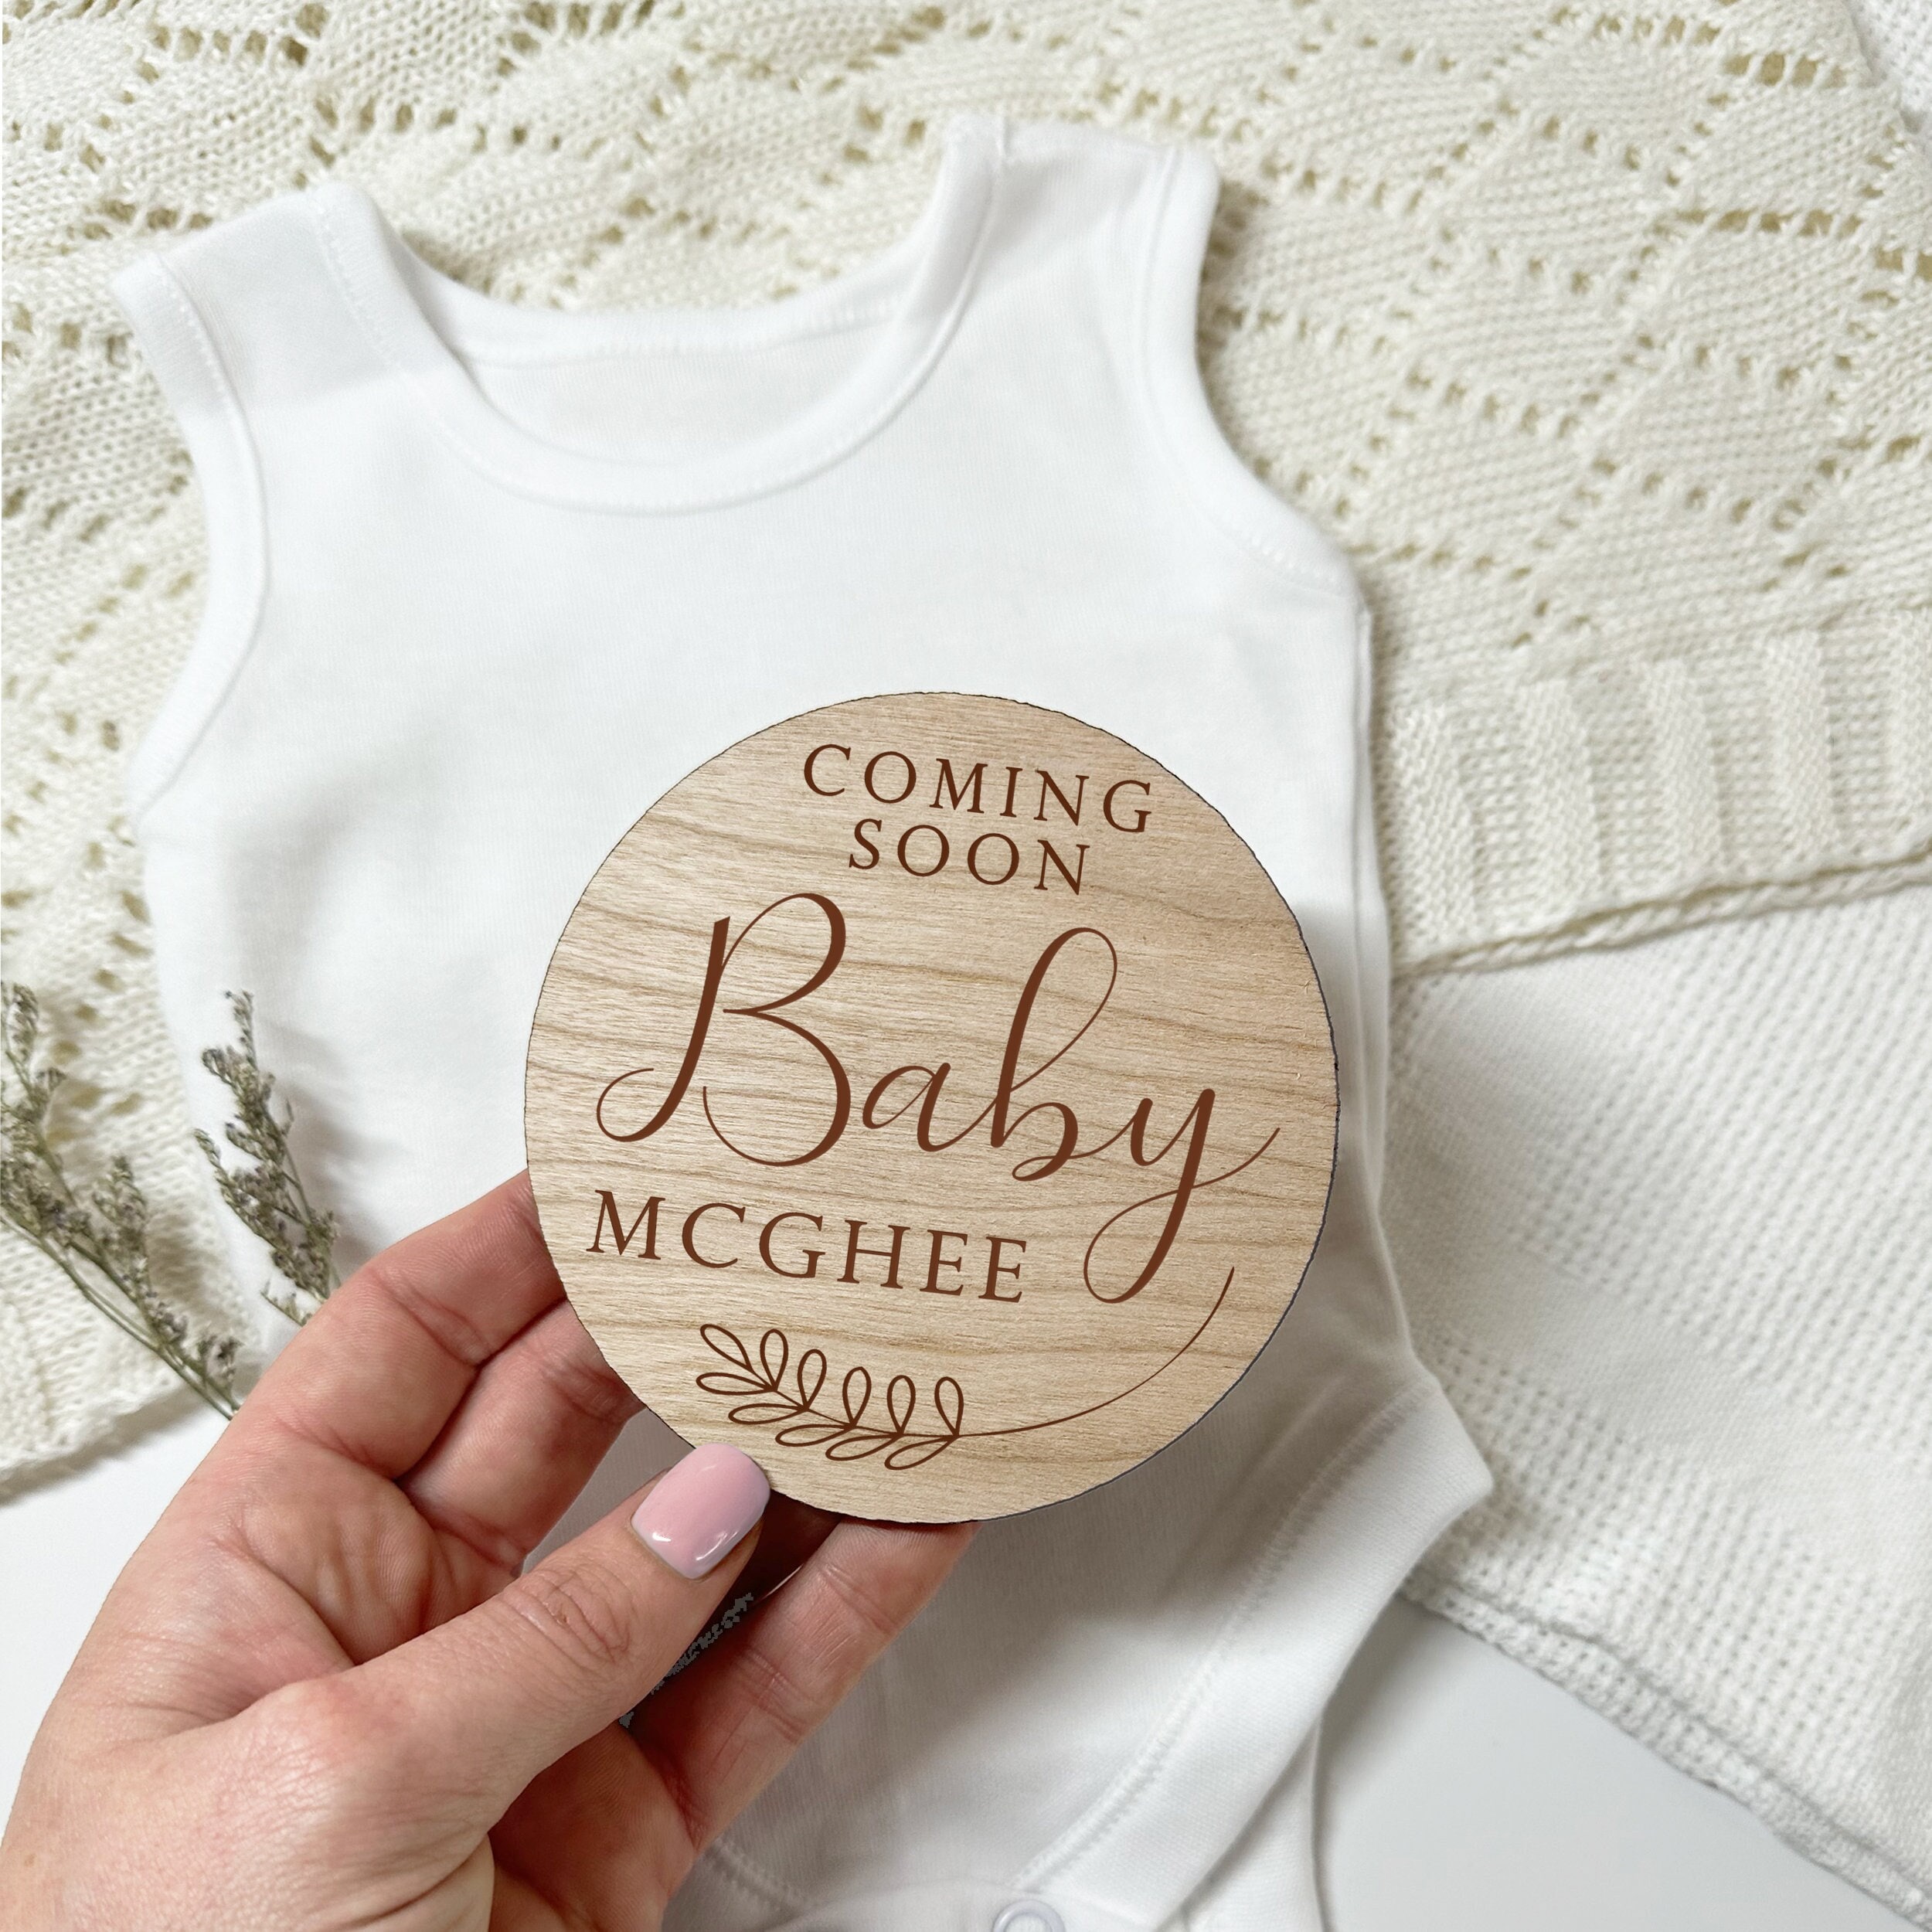 Placas cumplemes personalizadas para embarazo y llegada del bebé